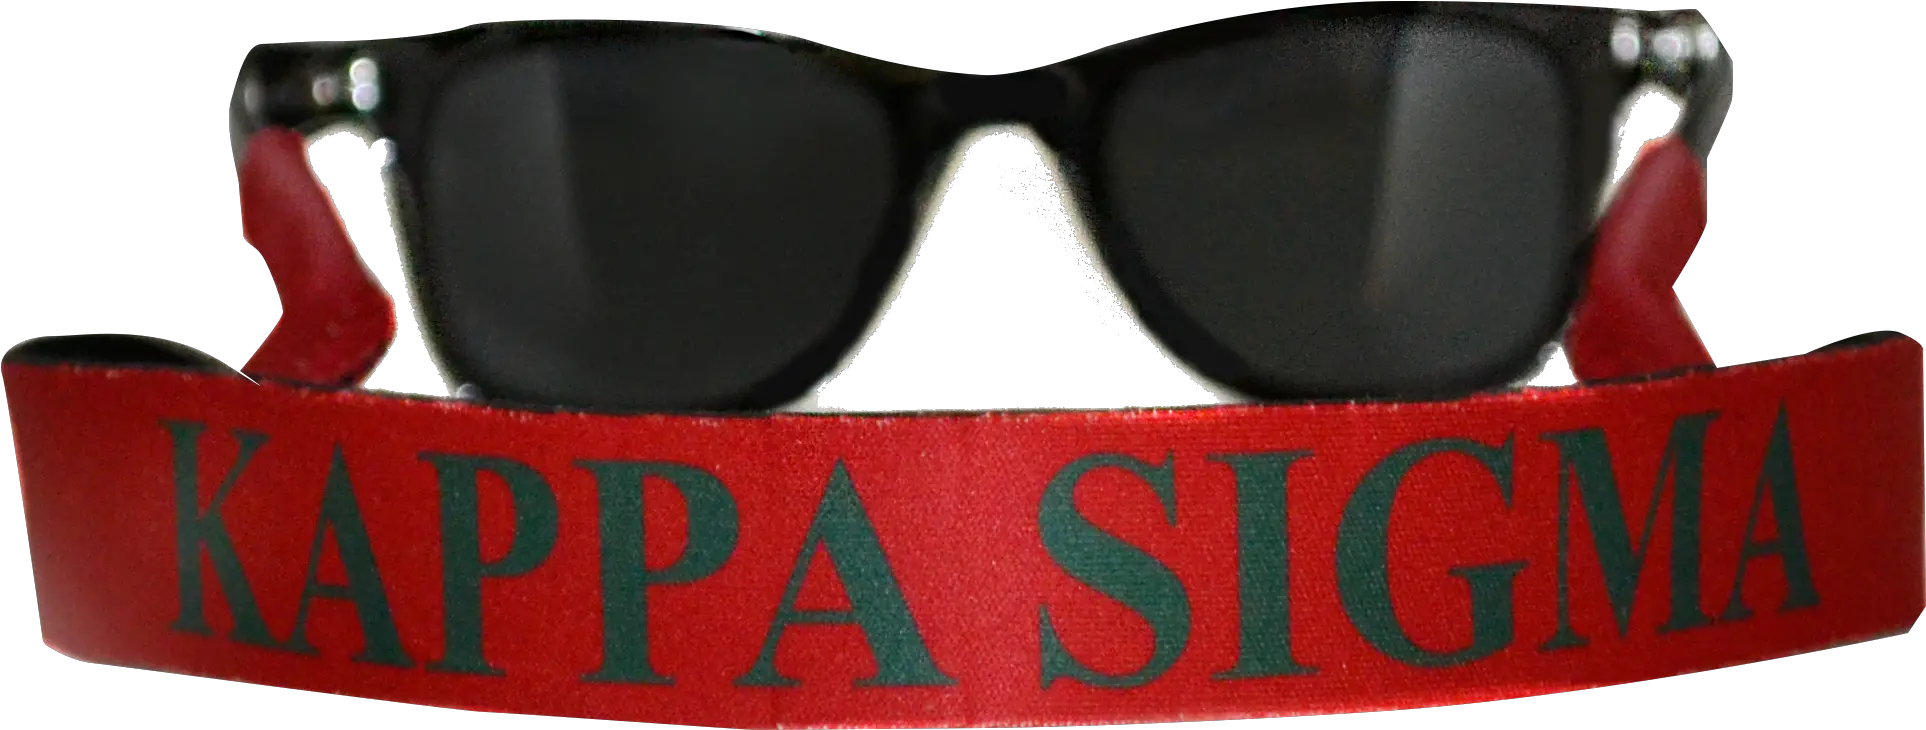 Download Transparent Kappa Pride Png Goggles Png Download Goggles Kappa Transparent Background